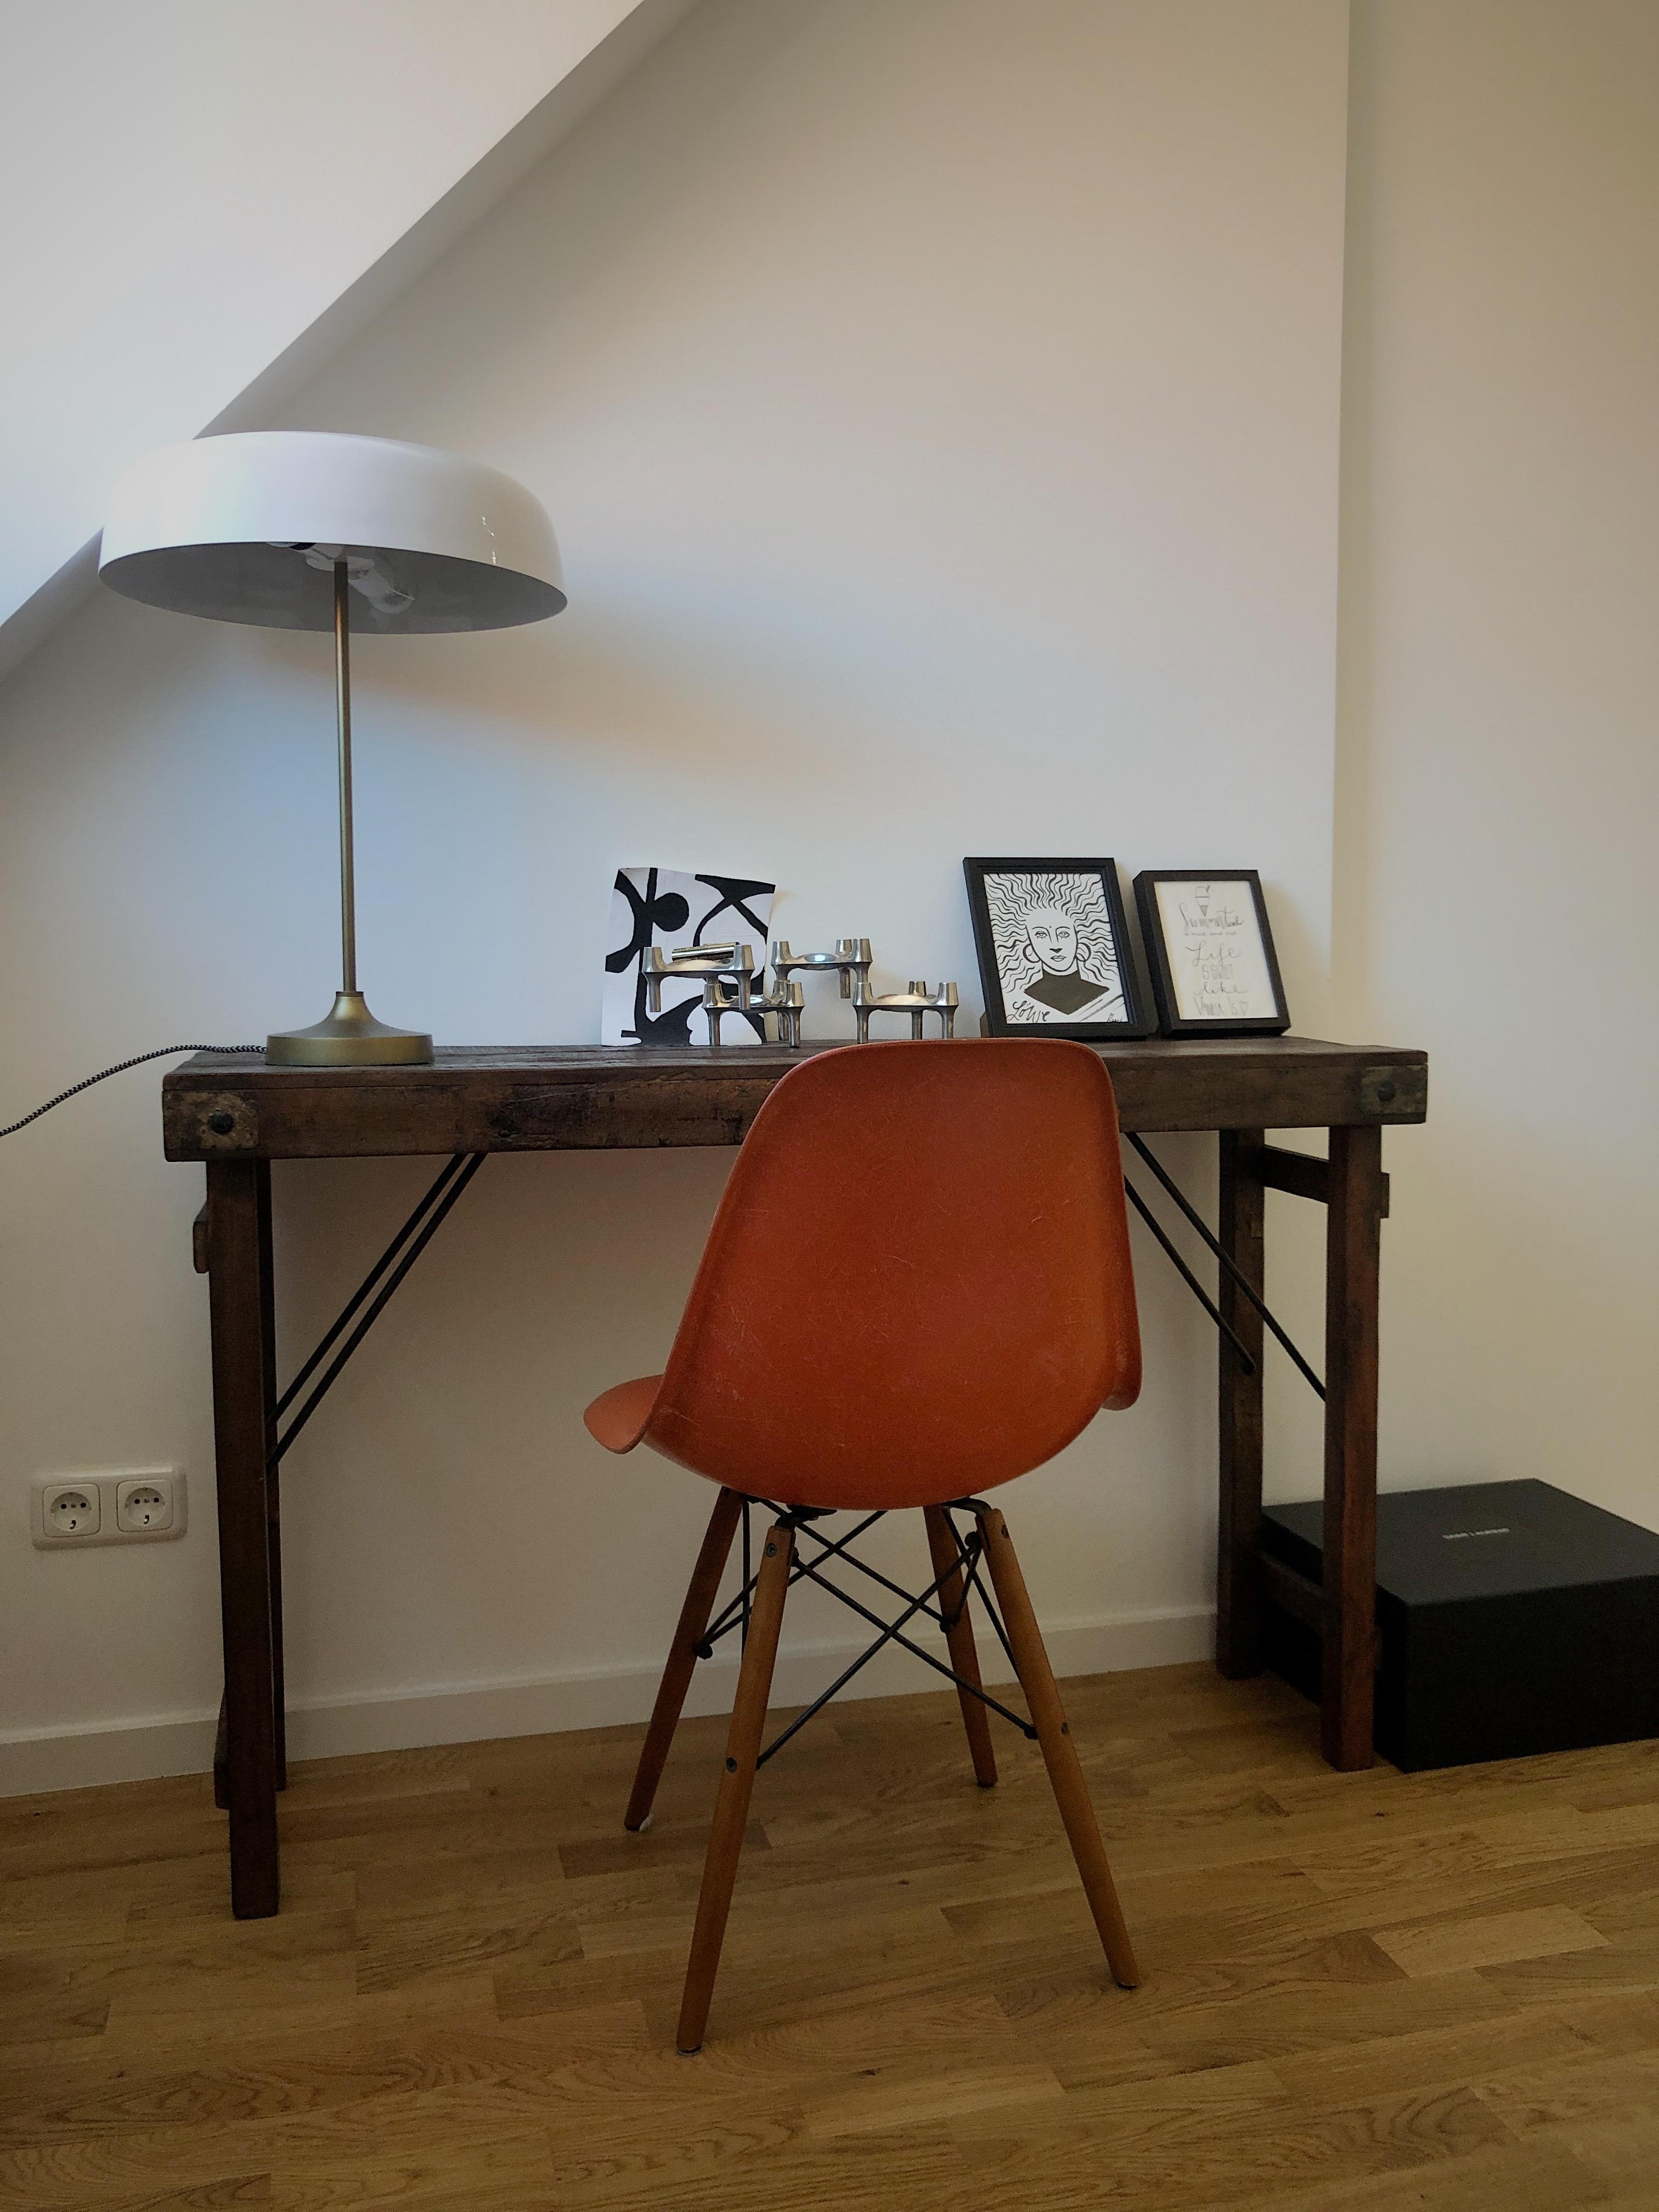 🧡
#office #homeoffice #interior #hermanmiller #eames #vitra #midcentury #orange #couchstyle #schreibtisch #desk